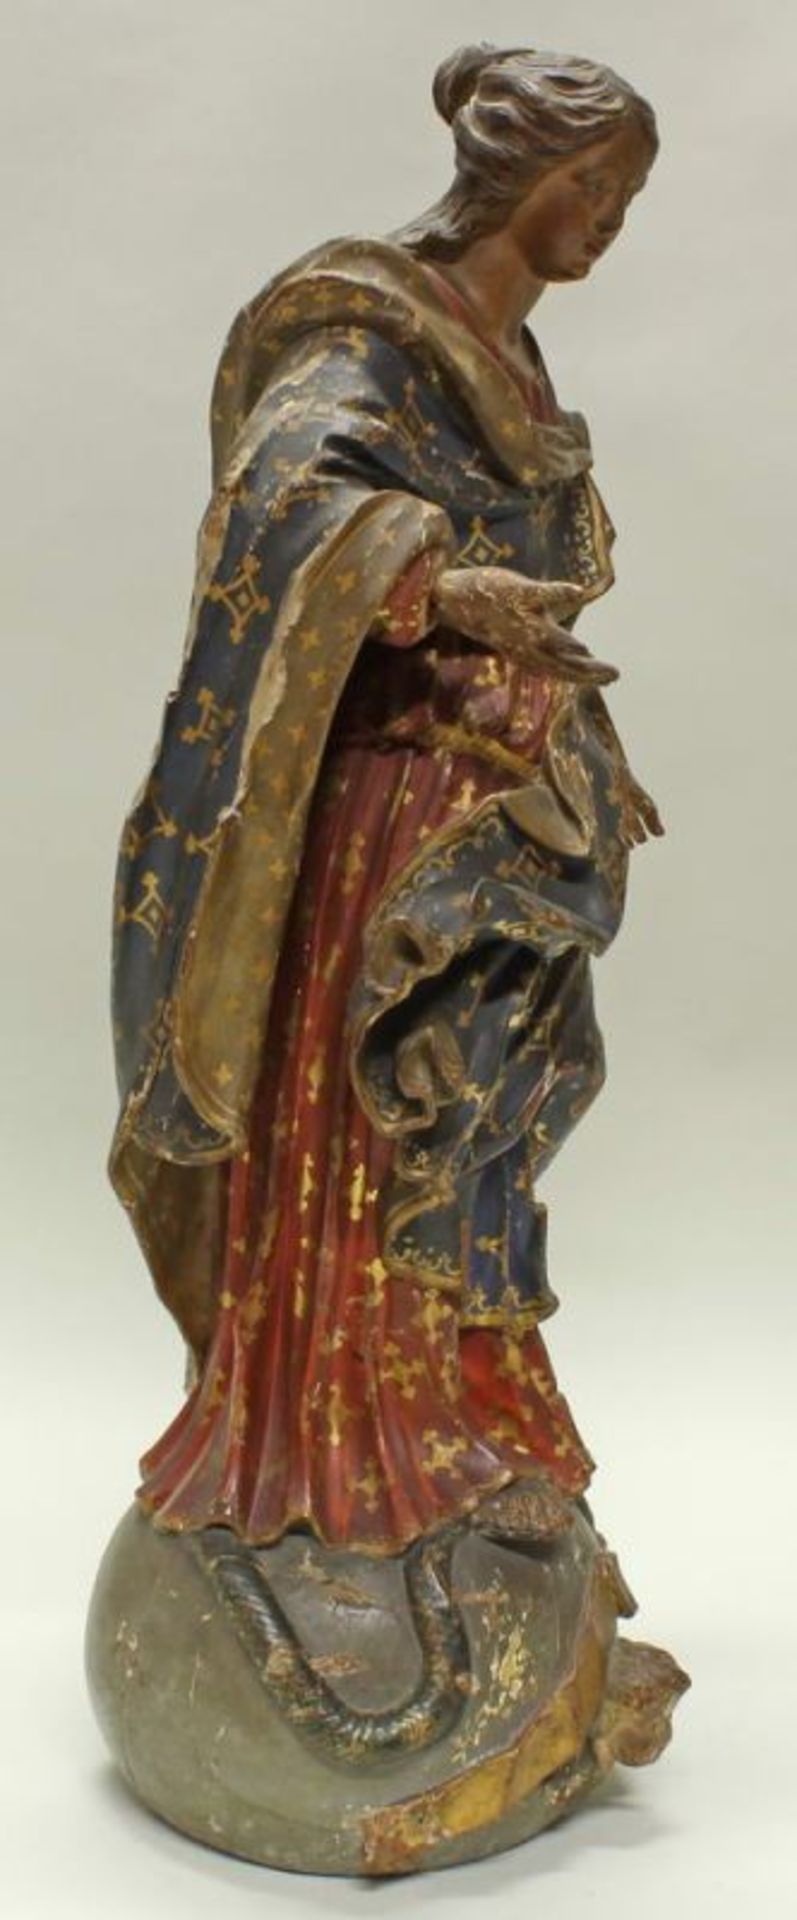 Skulptur, Holz geschnitzt, "Maria Immaculata", 18. Jh., beschädigt 20.00 % buyer's premium on the - Image 2 of 5